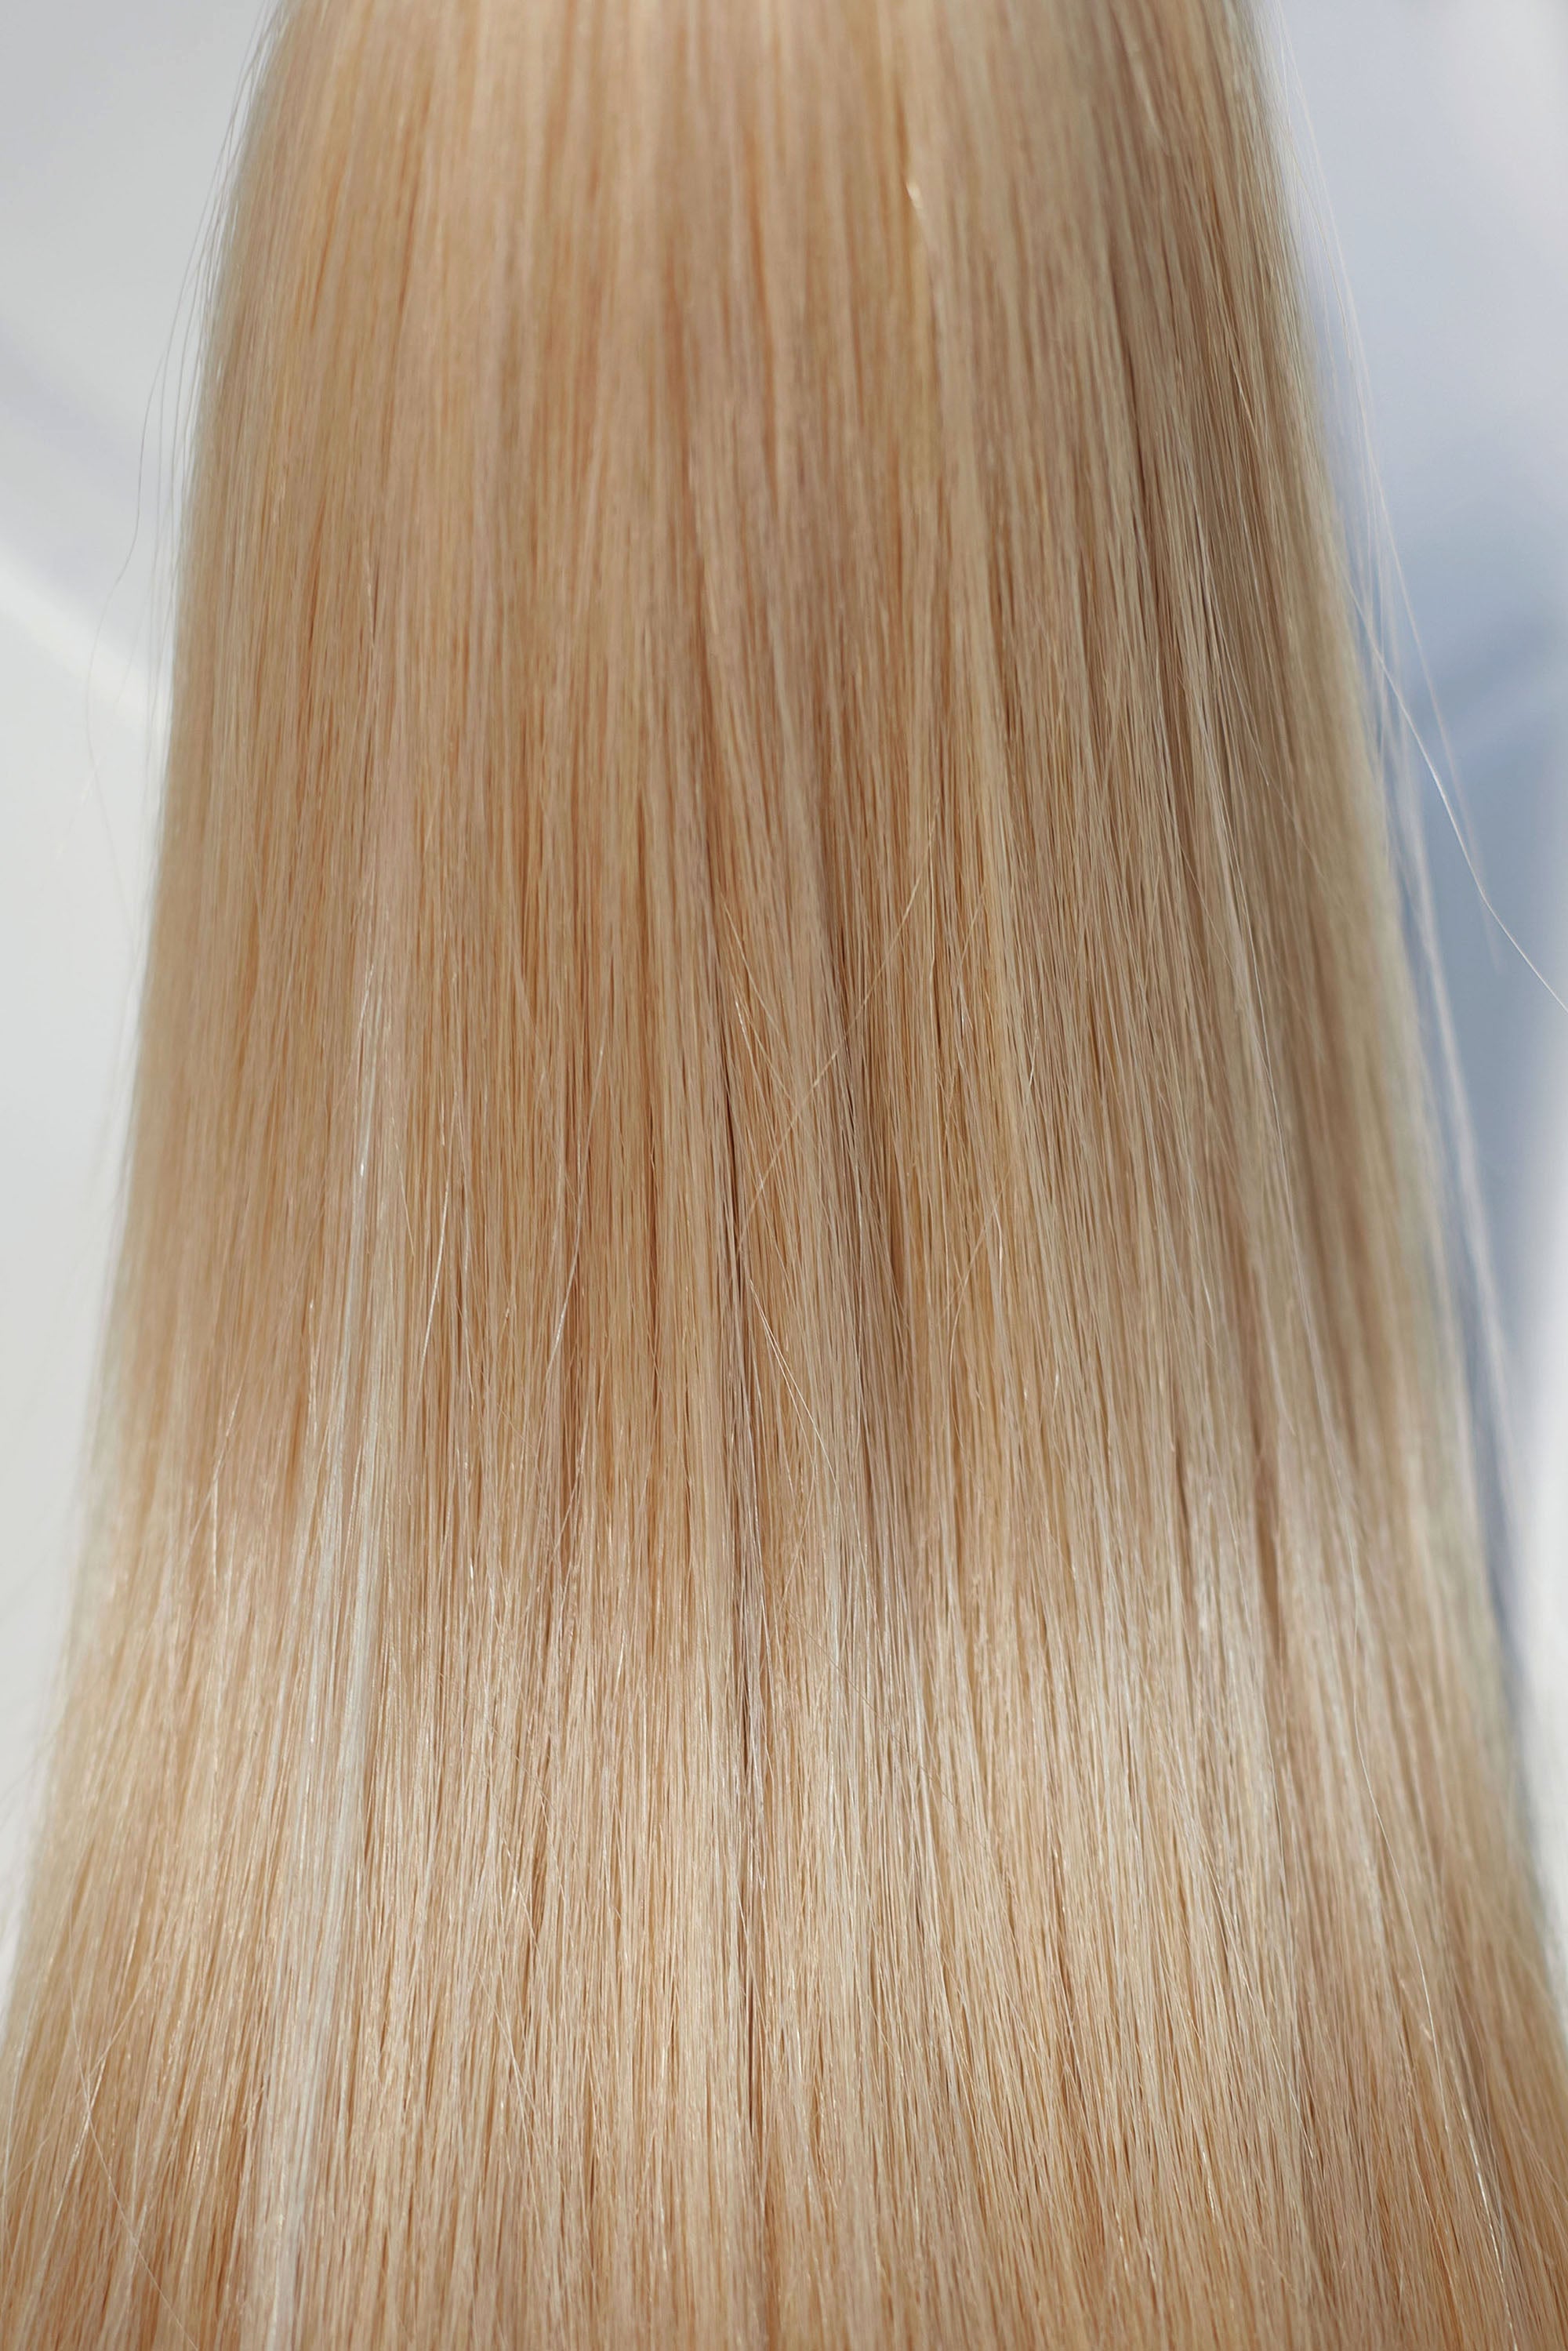 Behair professional Keratin Tip "Premium" 26" (65cm) Natural Straight Light Gold Blond #24 - 25g (Standart - 0.7g each pcs) hair extensions